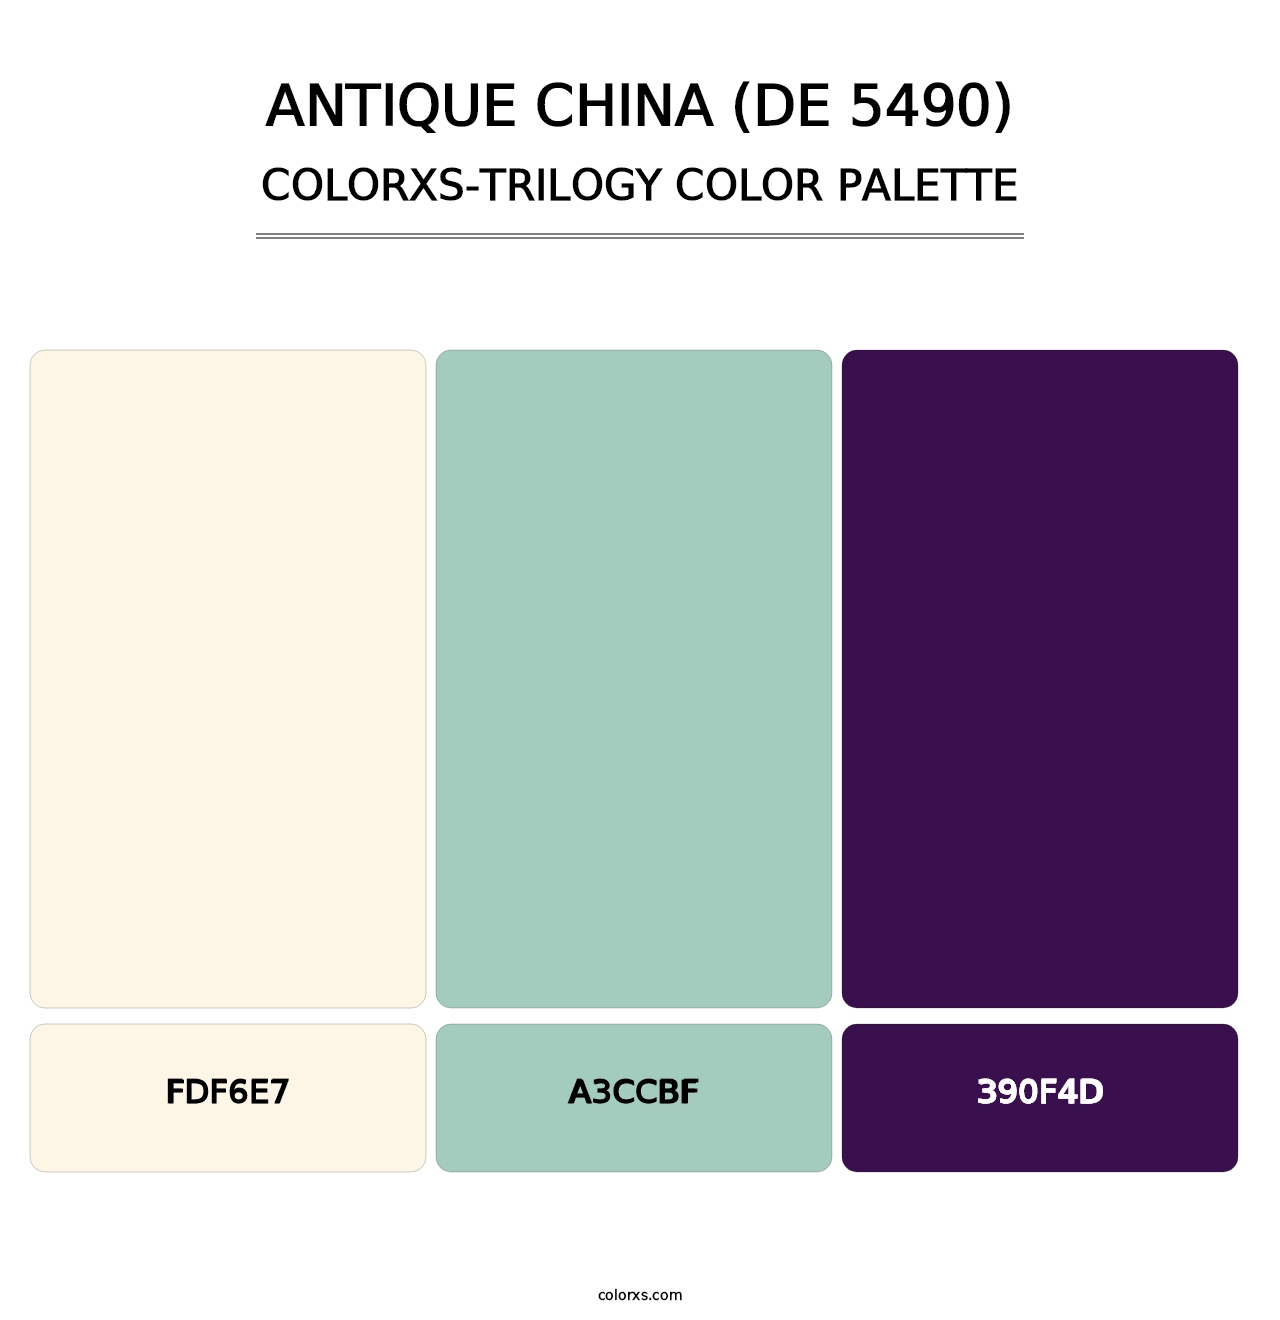 Antique China (DE 5490) - Colorxs Trilogy Palette